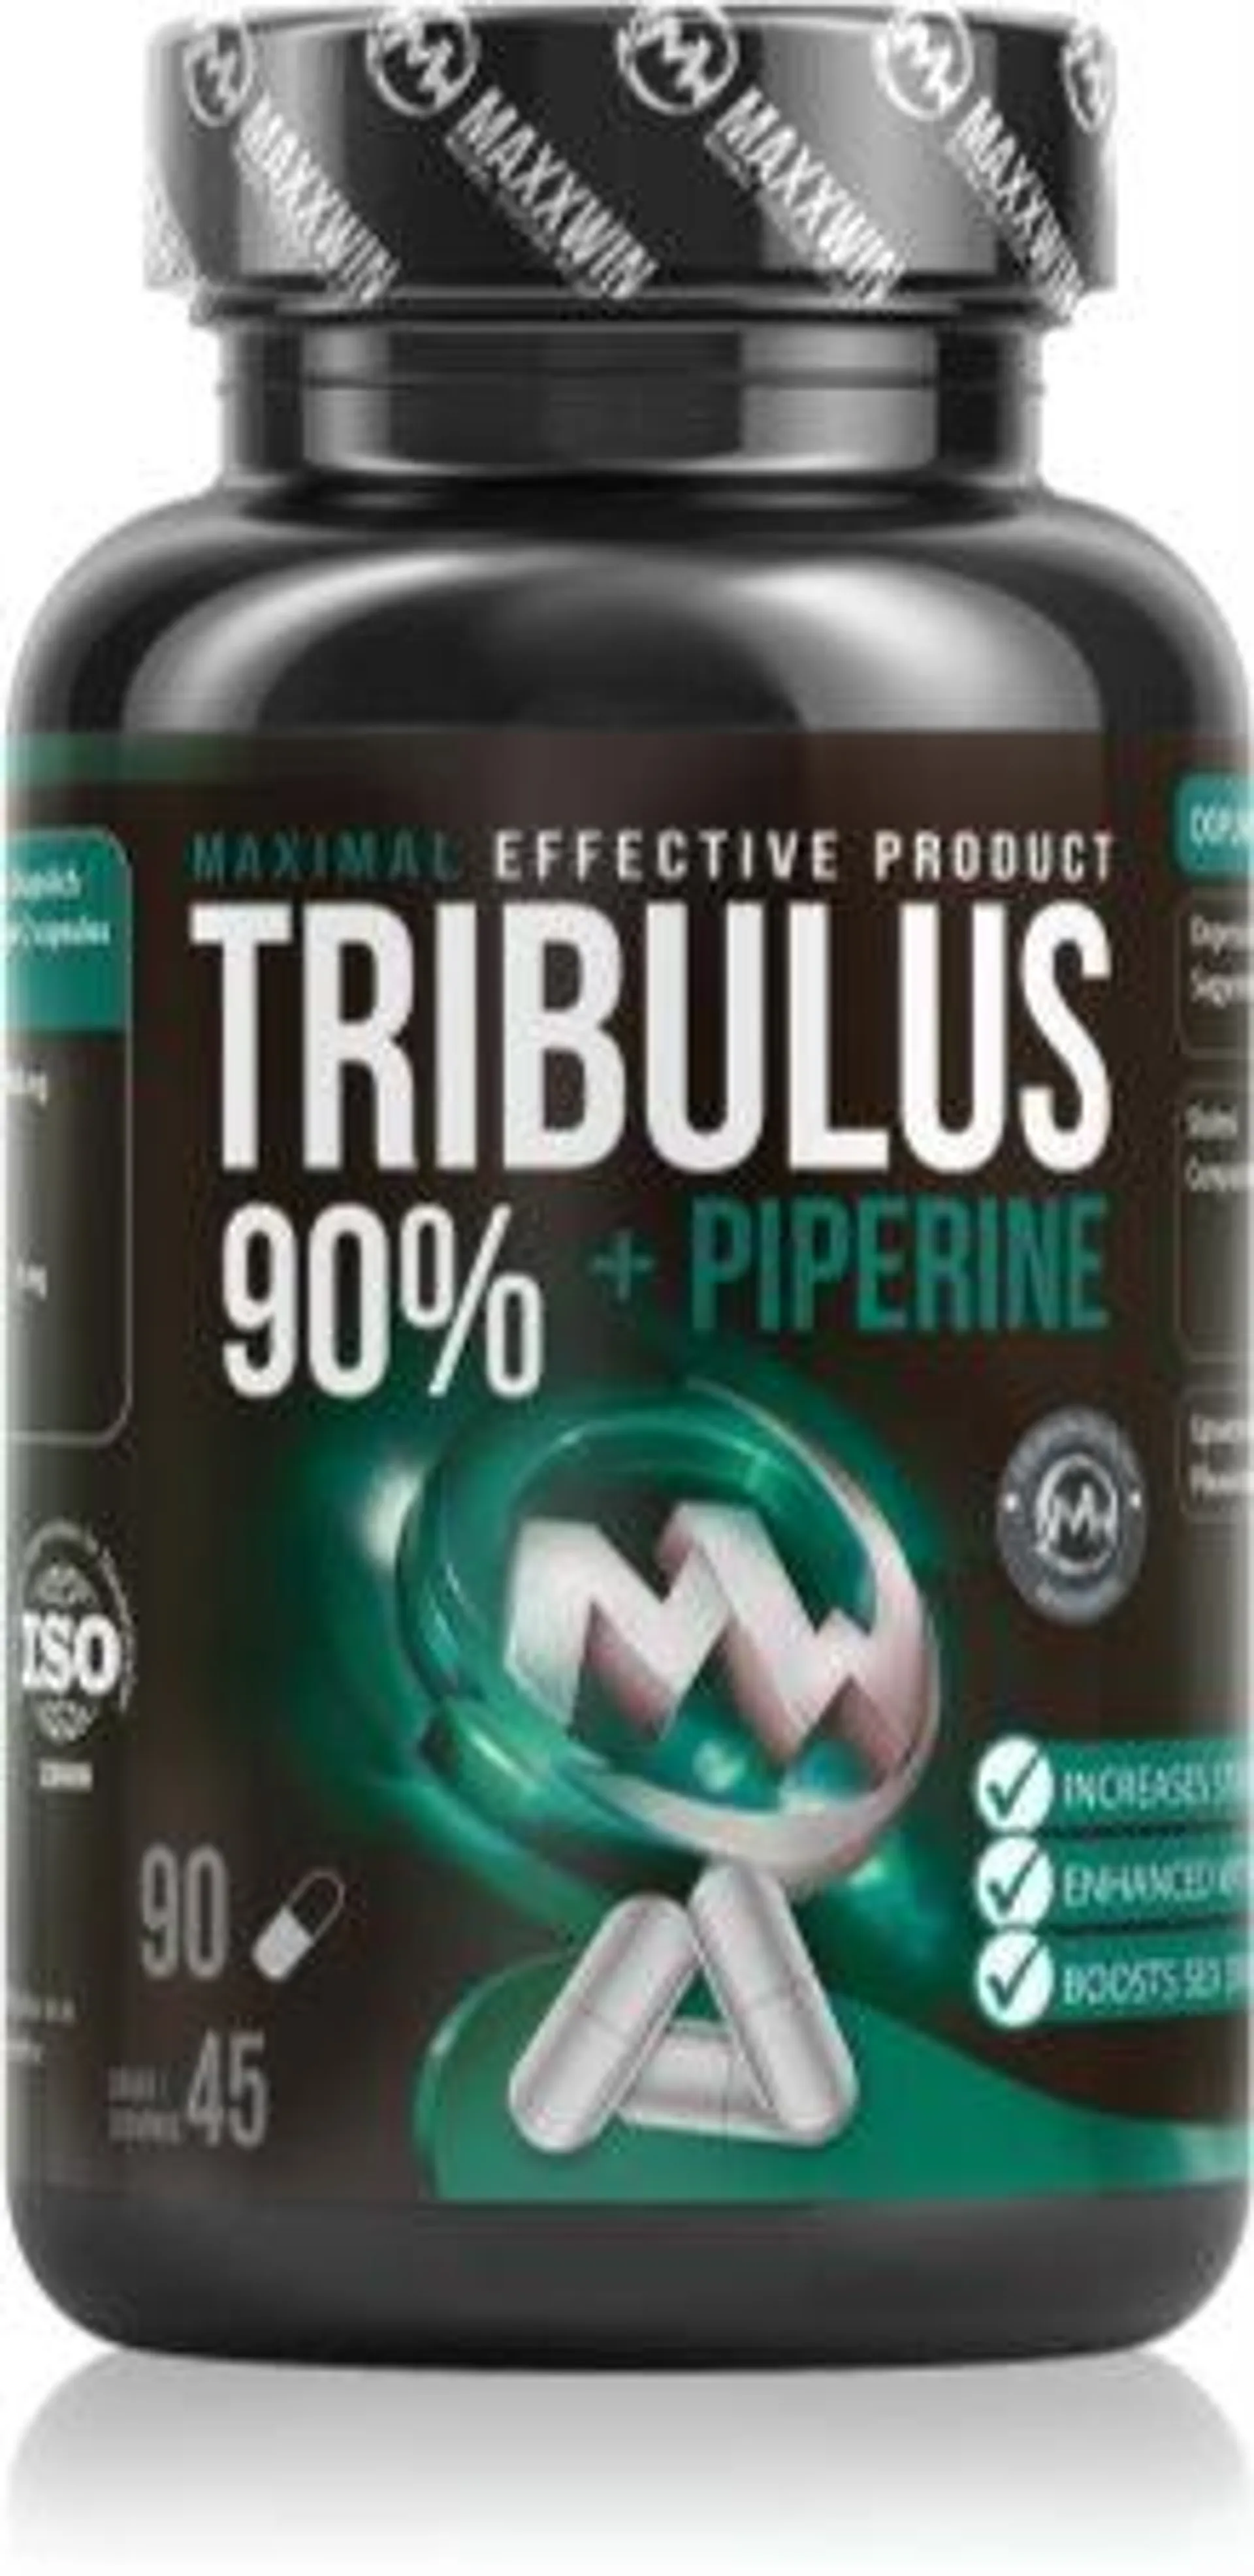 Tribulus 90% Piperine